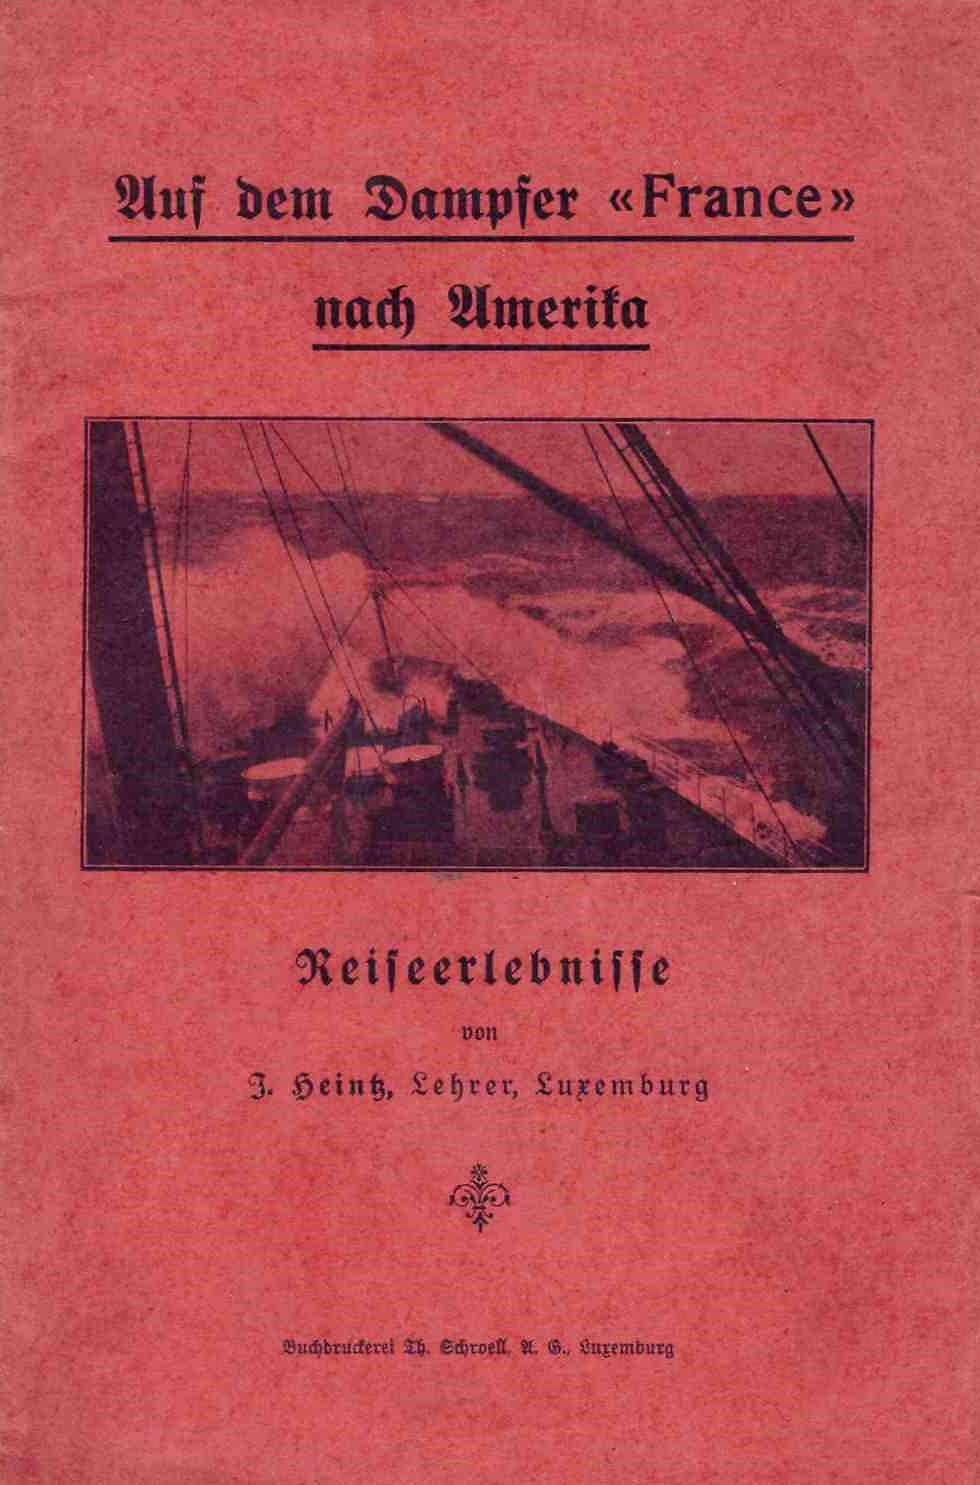 Null (旅行）J. HEITZ: Reise nach Amerika, Buchdruckerei Th. Schroell, ca 1900